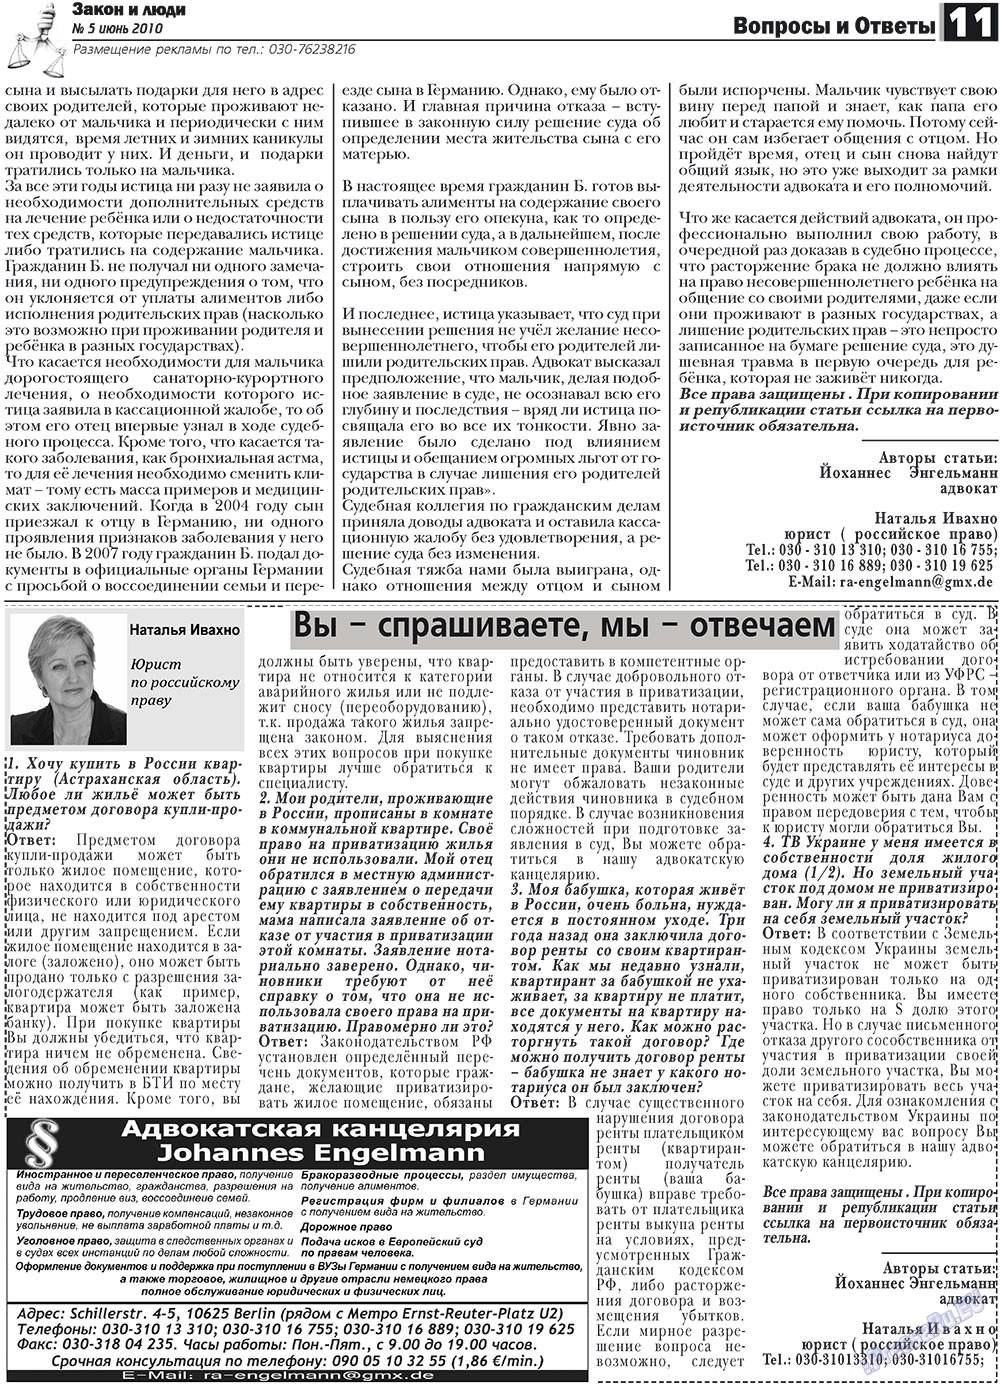 Закон и люди, газета. 2010 №5 стр.11